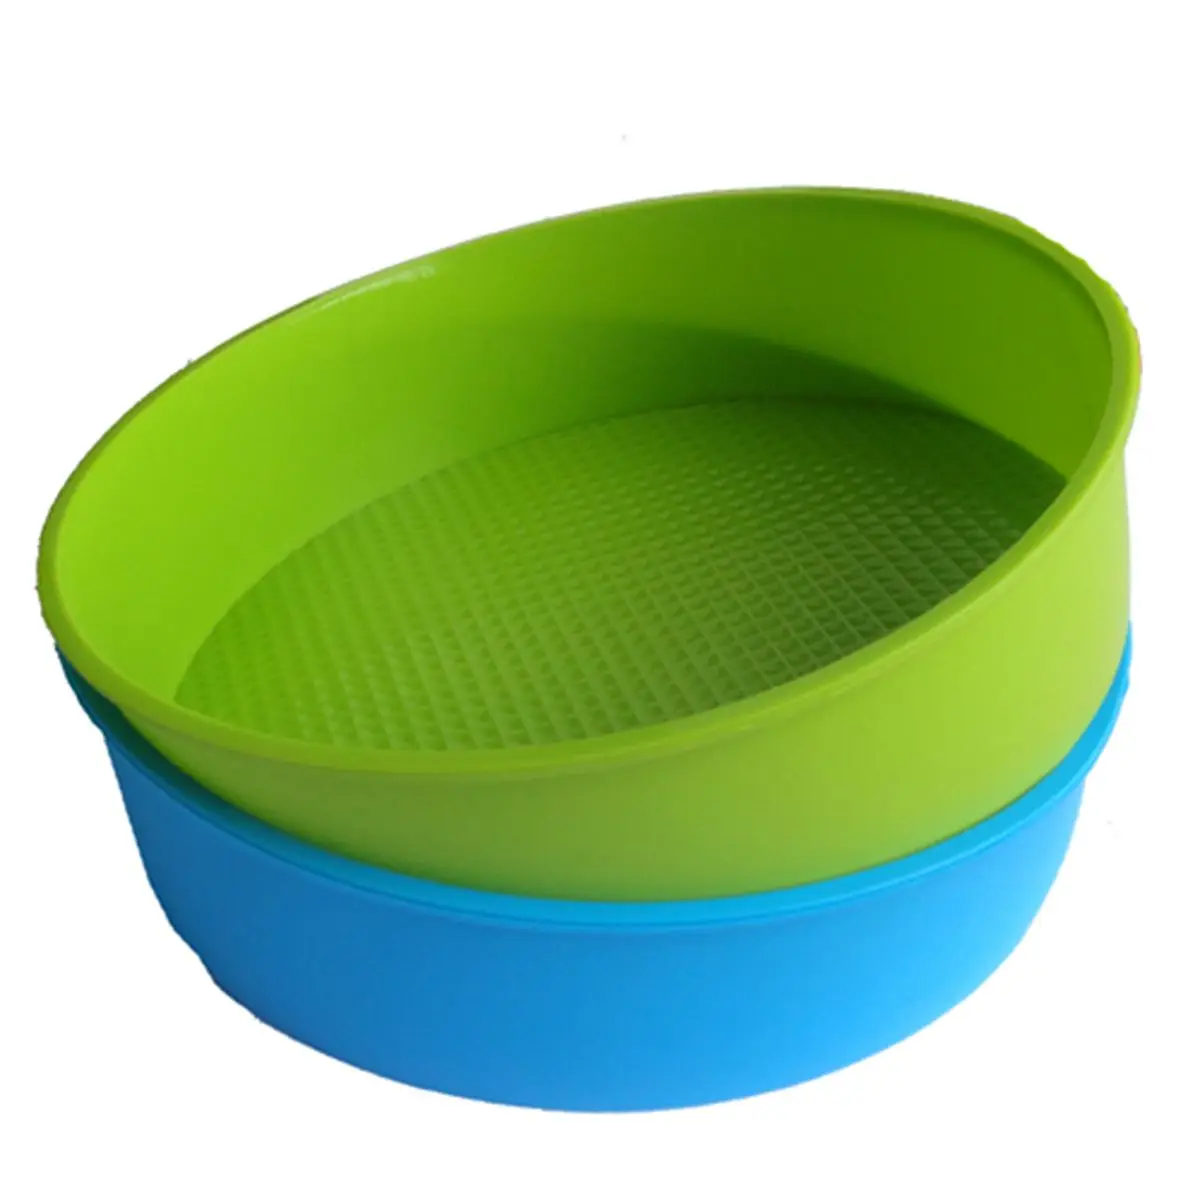 Горячая Распродажа, силиконовая форма для выпечки, 26 см/10 дюймов, круглая форма для торта, форма для выпечки, синий и зеленый цвета, случайные